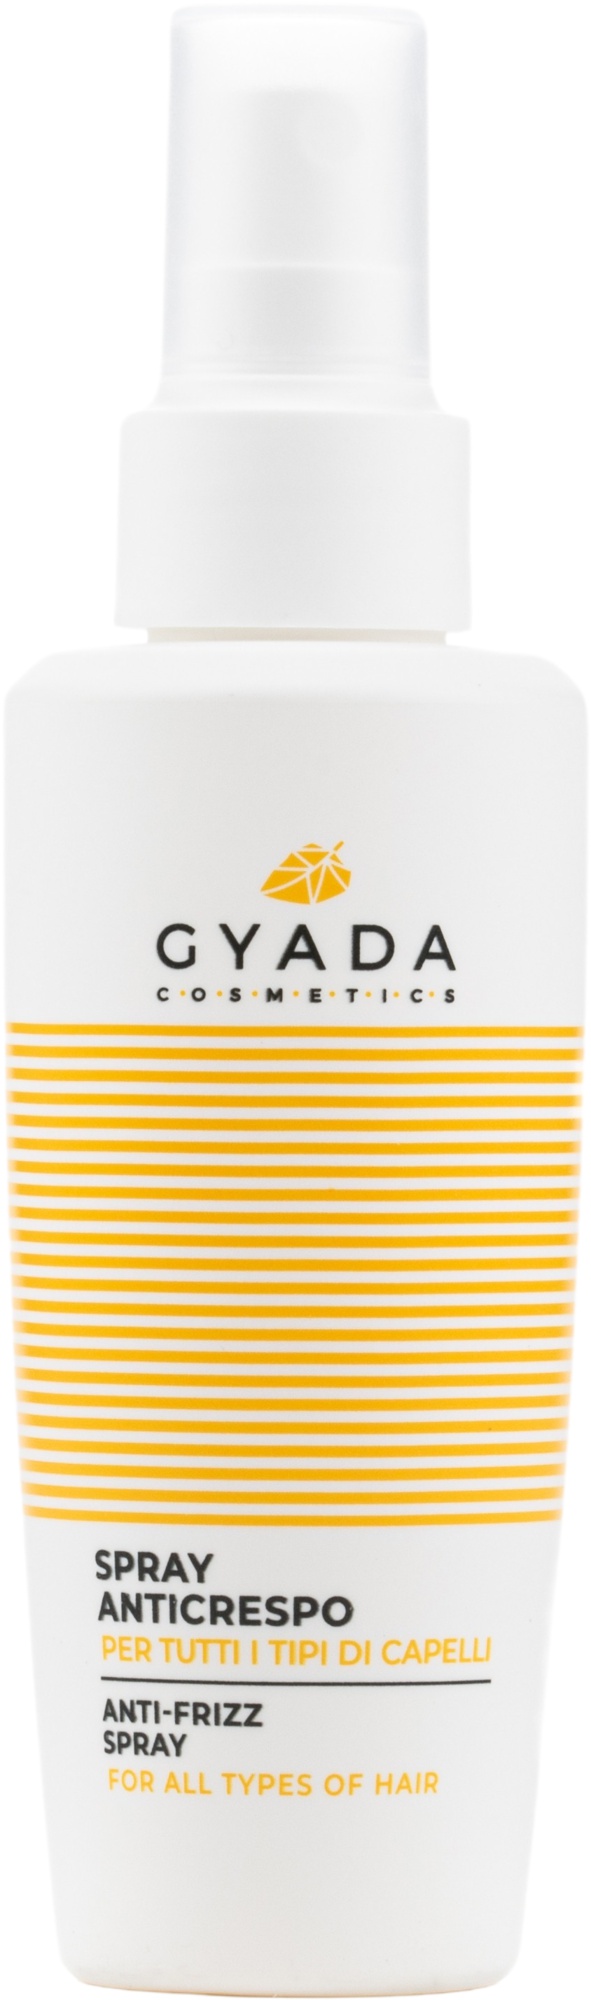 Gyada Cosmetics Anti-frizz Spray